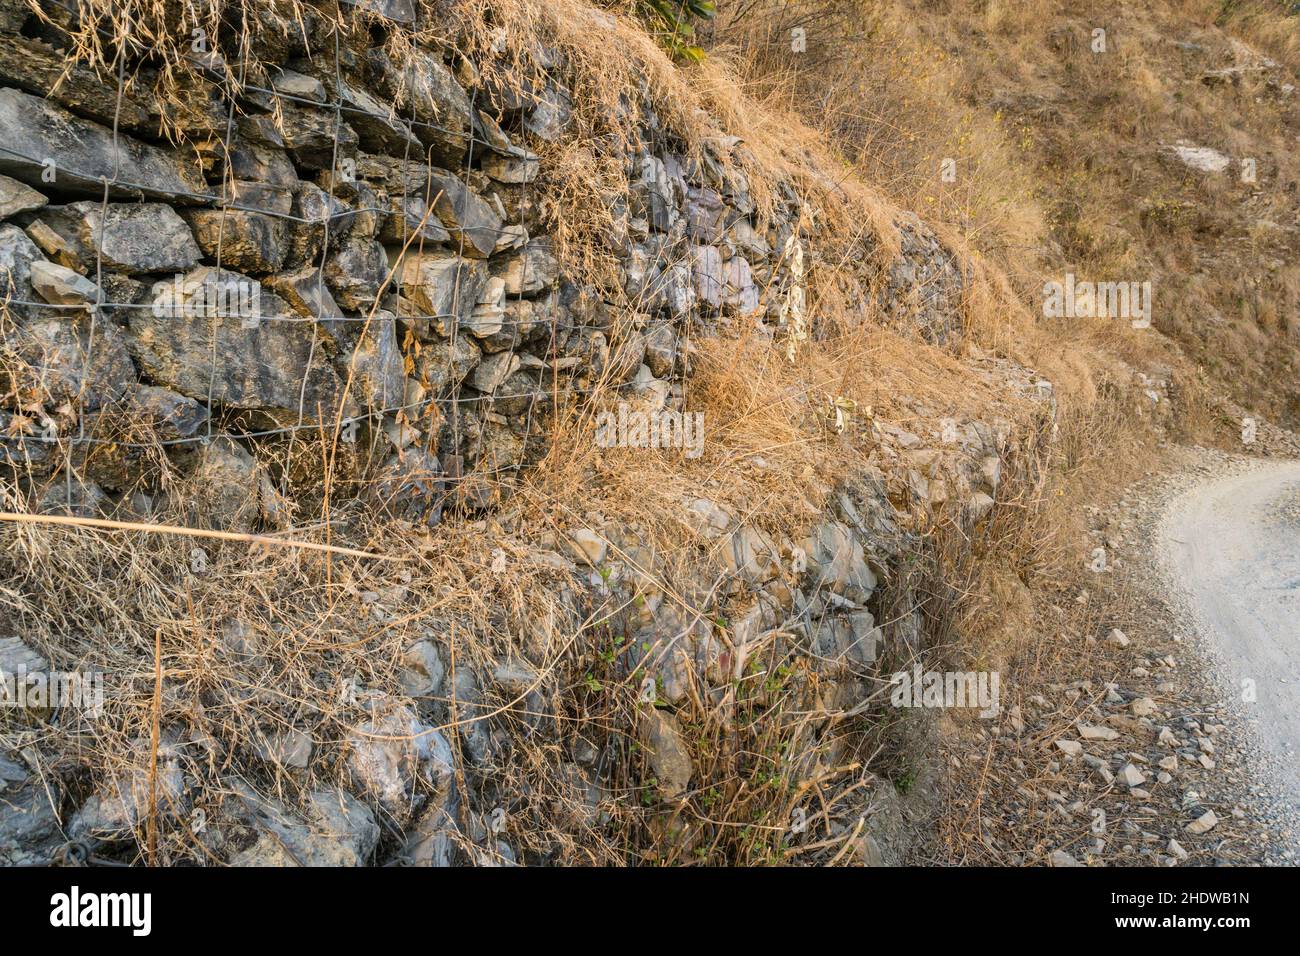 Un mur de pierre de bord de route recouvert de mousse et d'herbe sèche. Ces types de murs de pierre sont généralement construits dans les régions de montagne pour éviter les glissements de terrain et la route c Banque D'Images